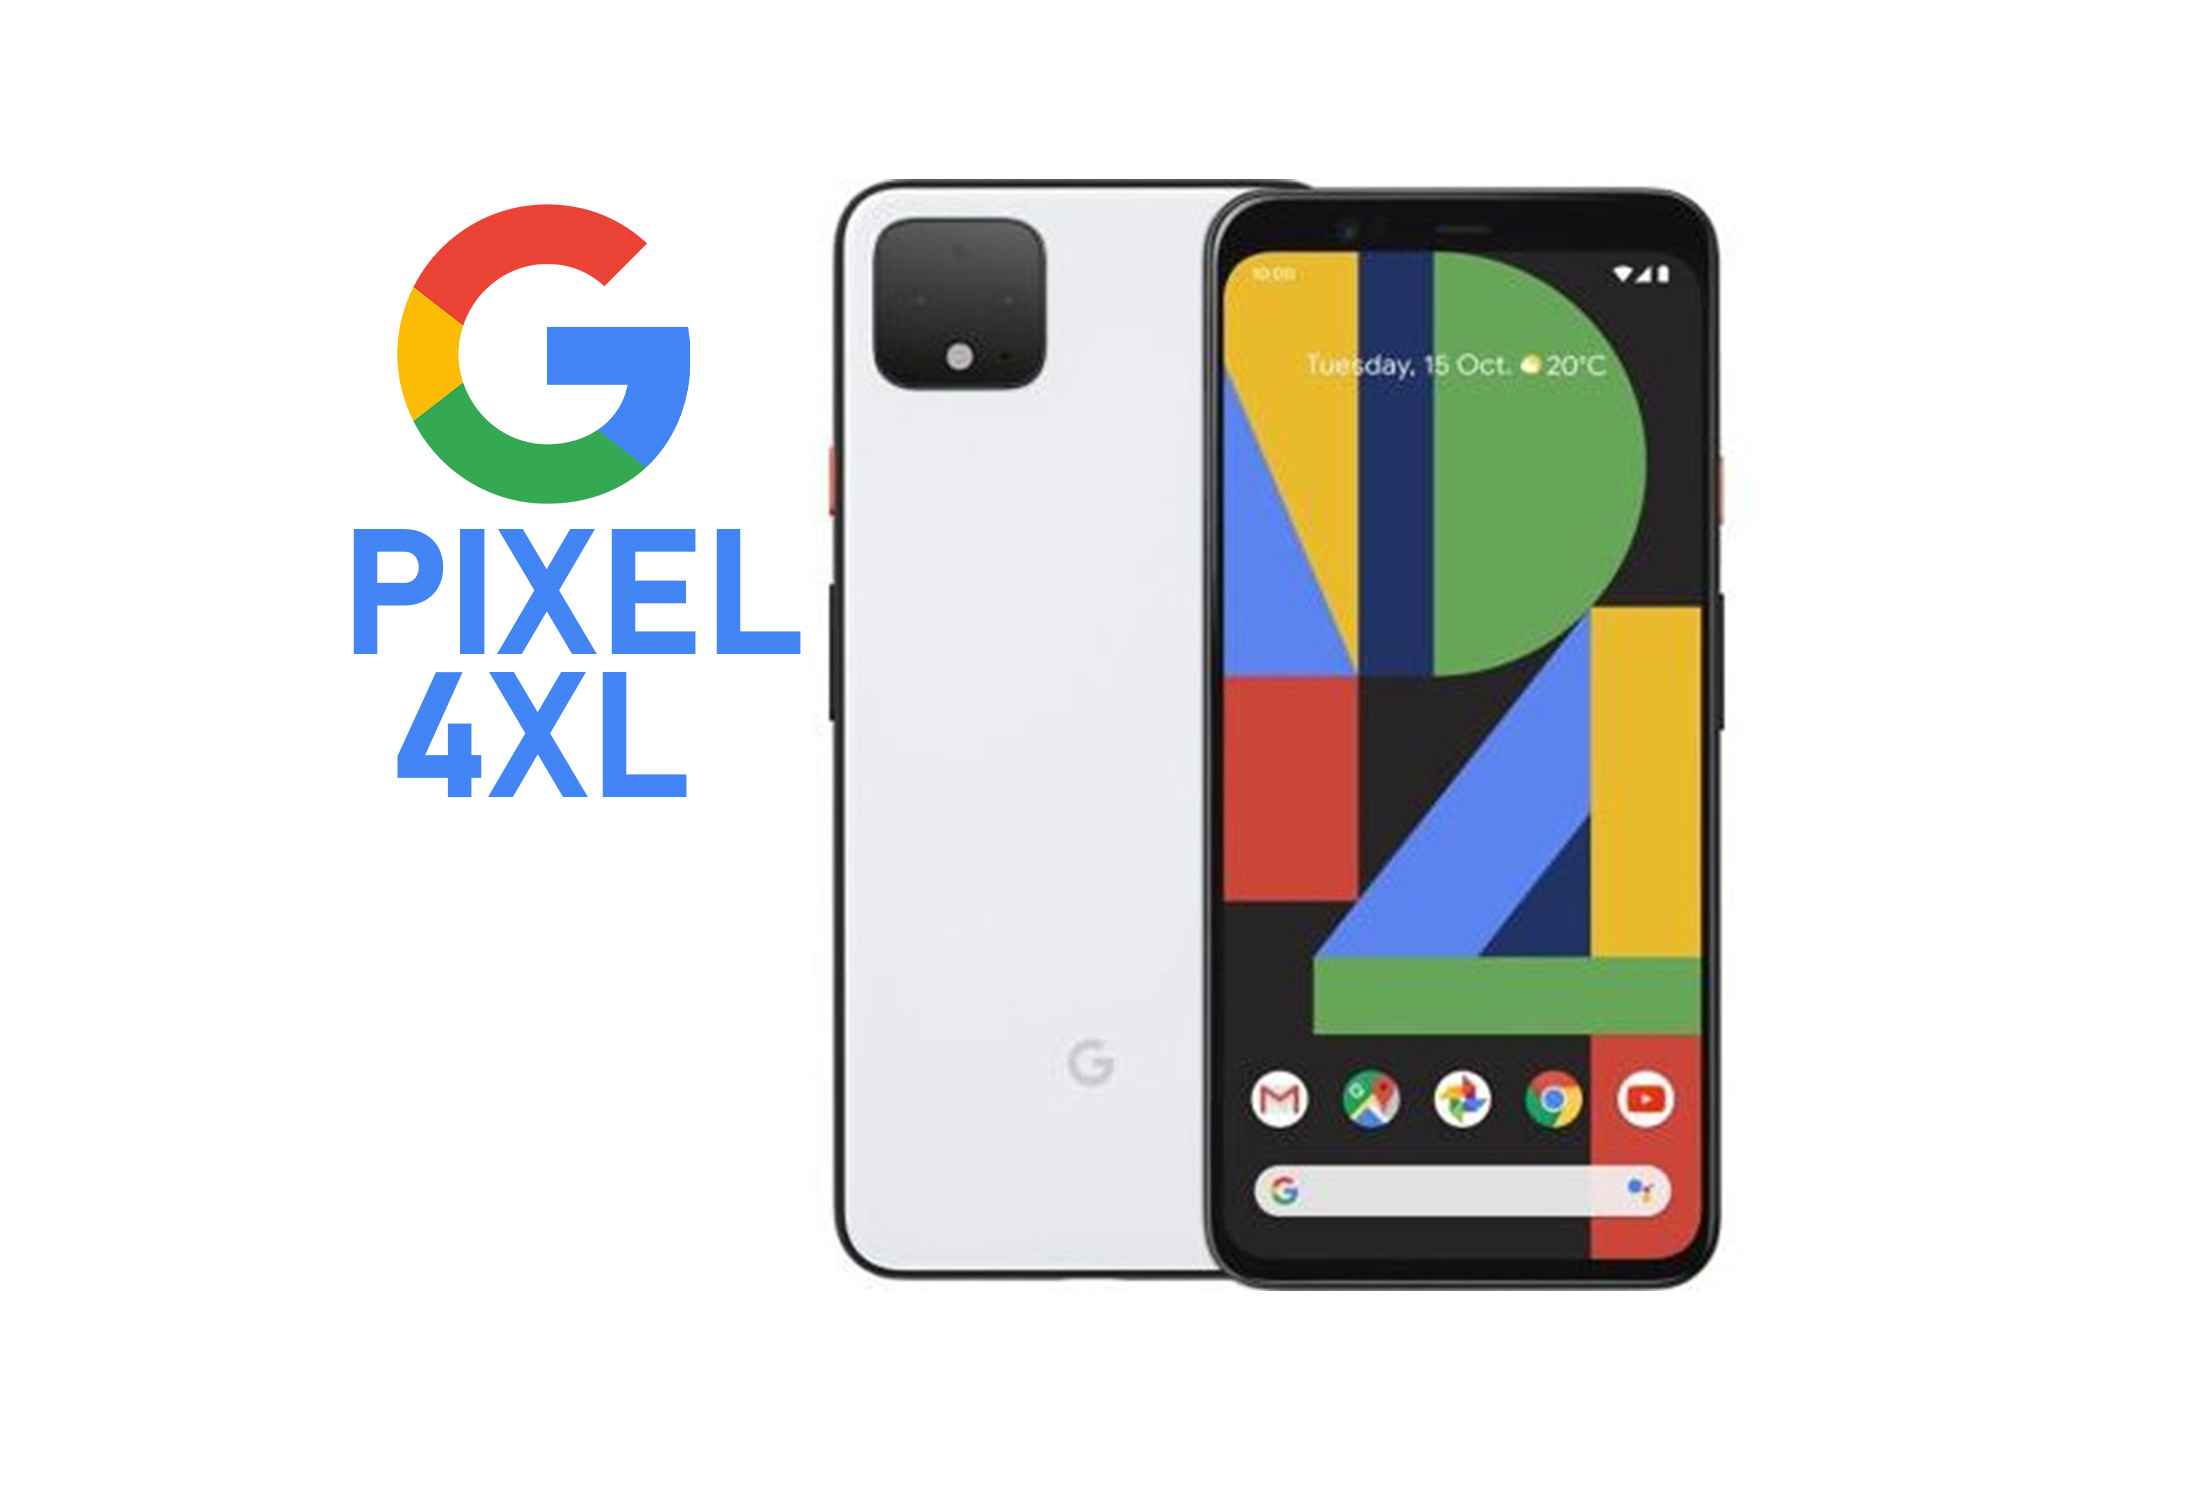 Google Pixel 4XL Snapdragon 855 Octa-Core 6GB RAM  64GB ROM-seUZD.jpeg